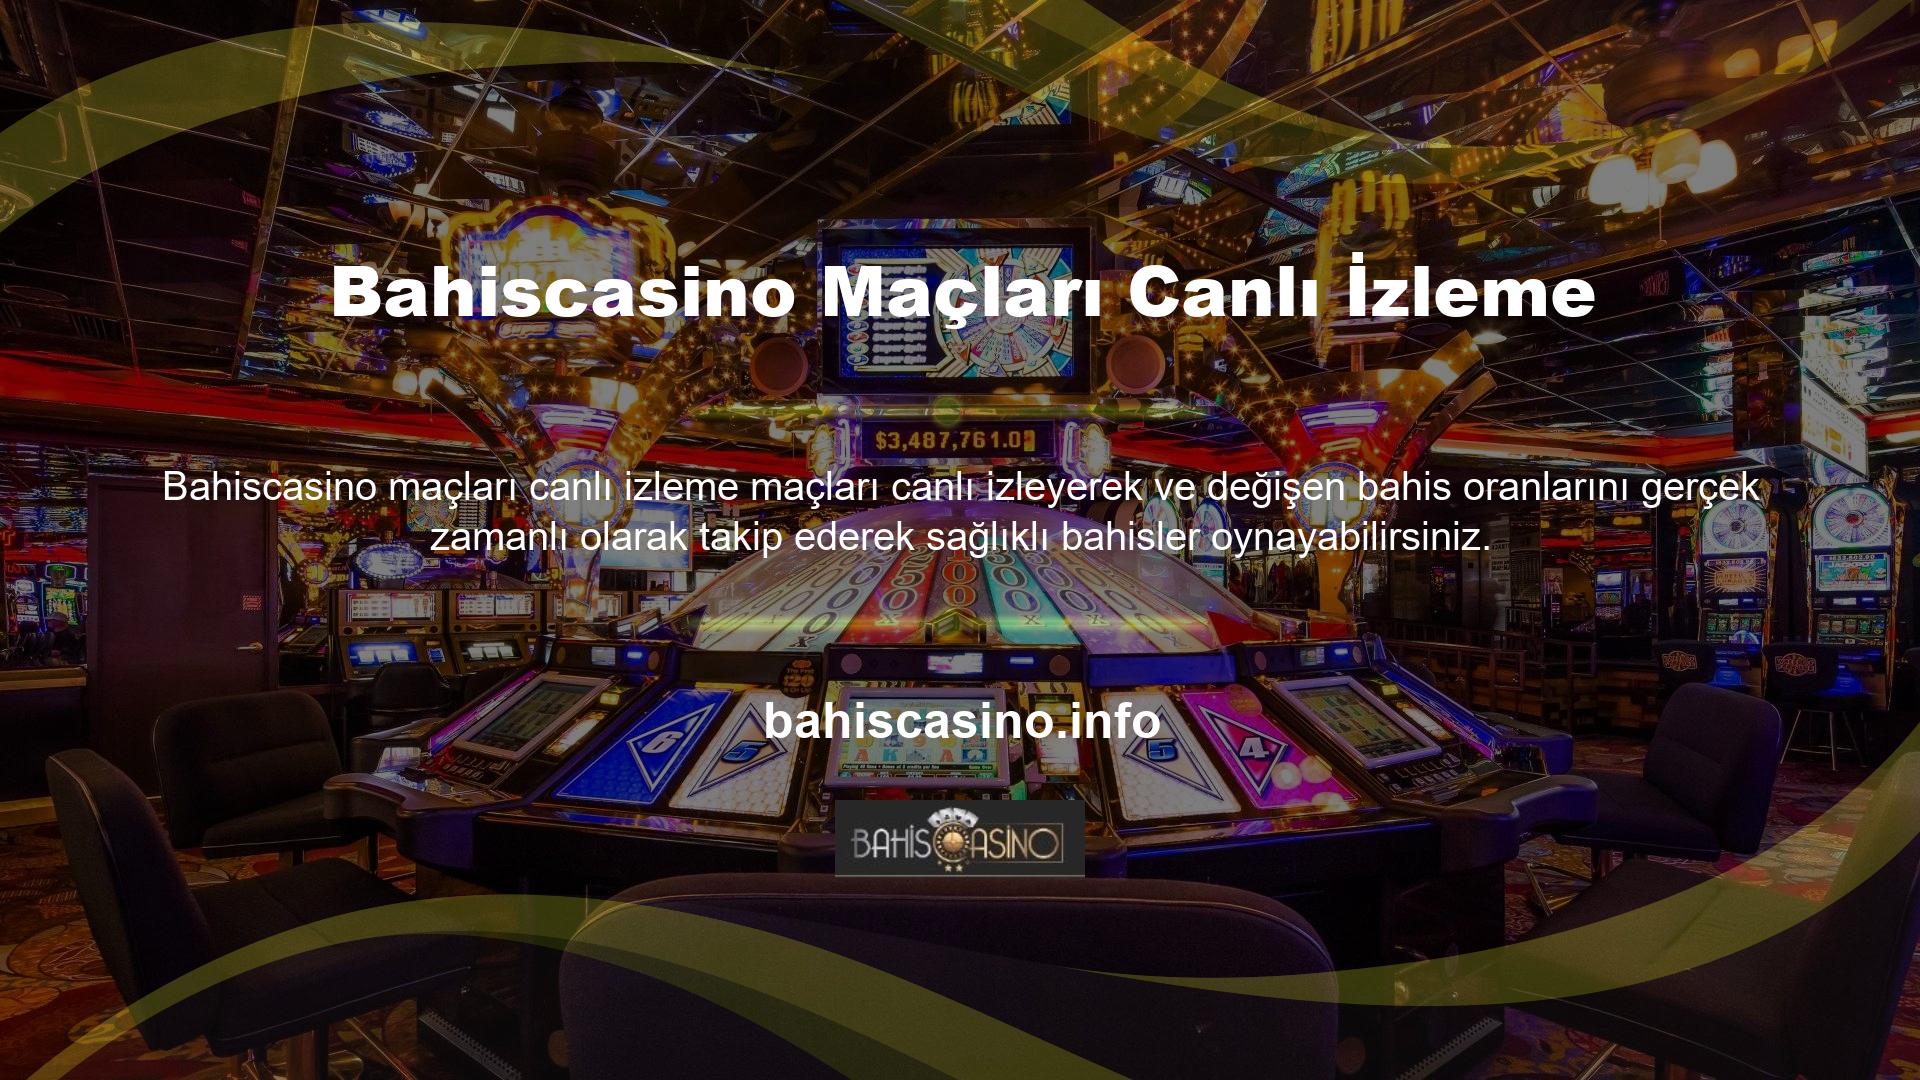 Bahiscasino Slot Online Oyun Ofisi ülkemizdeki canlı casino oyunlarının ve spor bahis tutkunlarının ilgisini çekmiş ve güvenilir lisanslarıyla tanınmaktadır